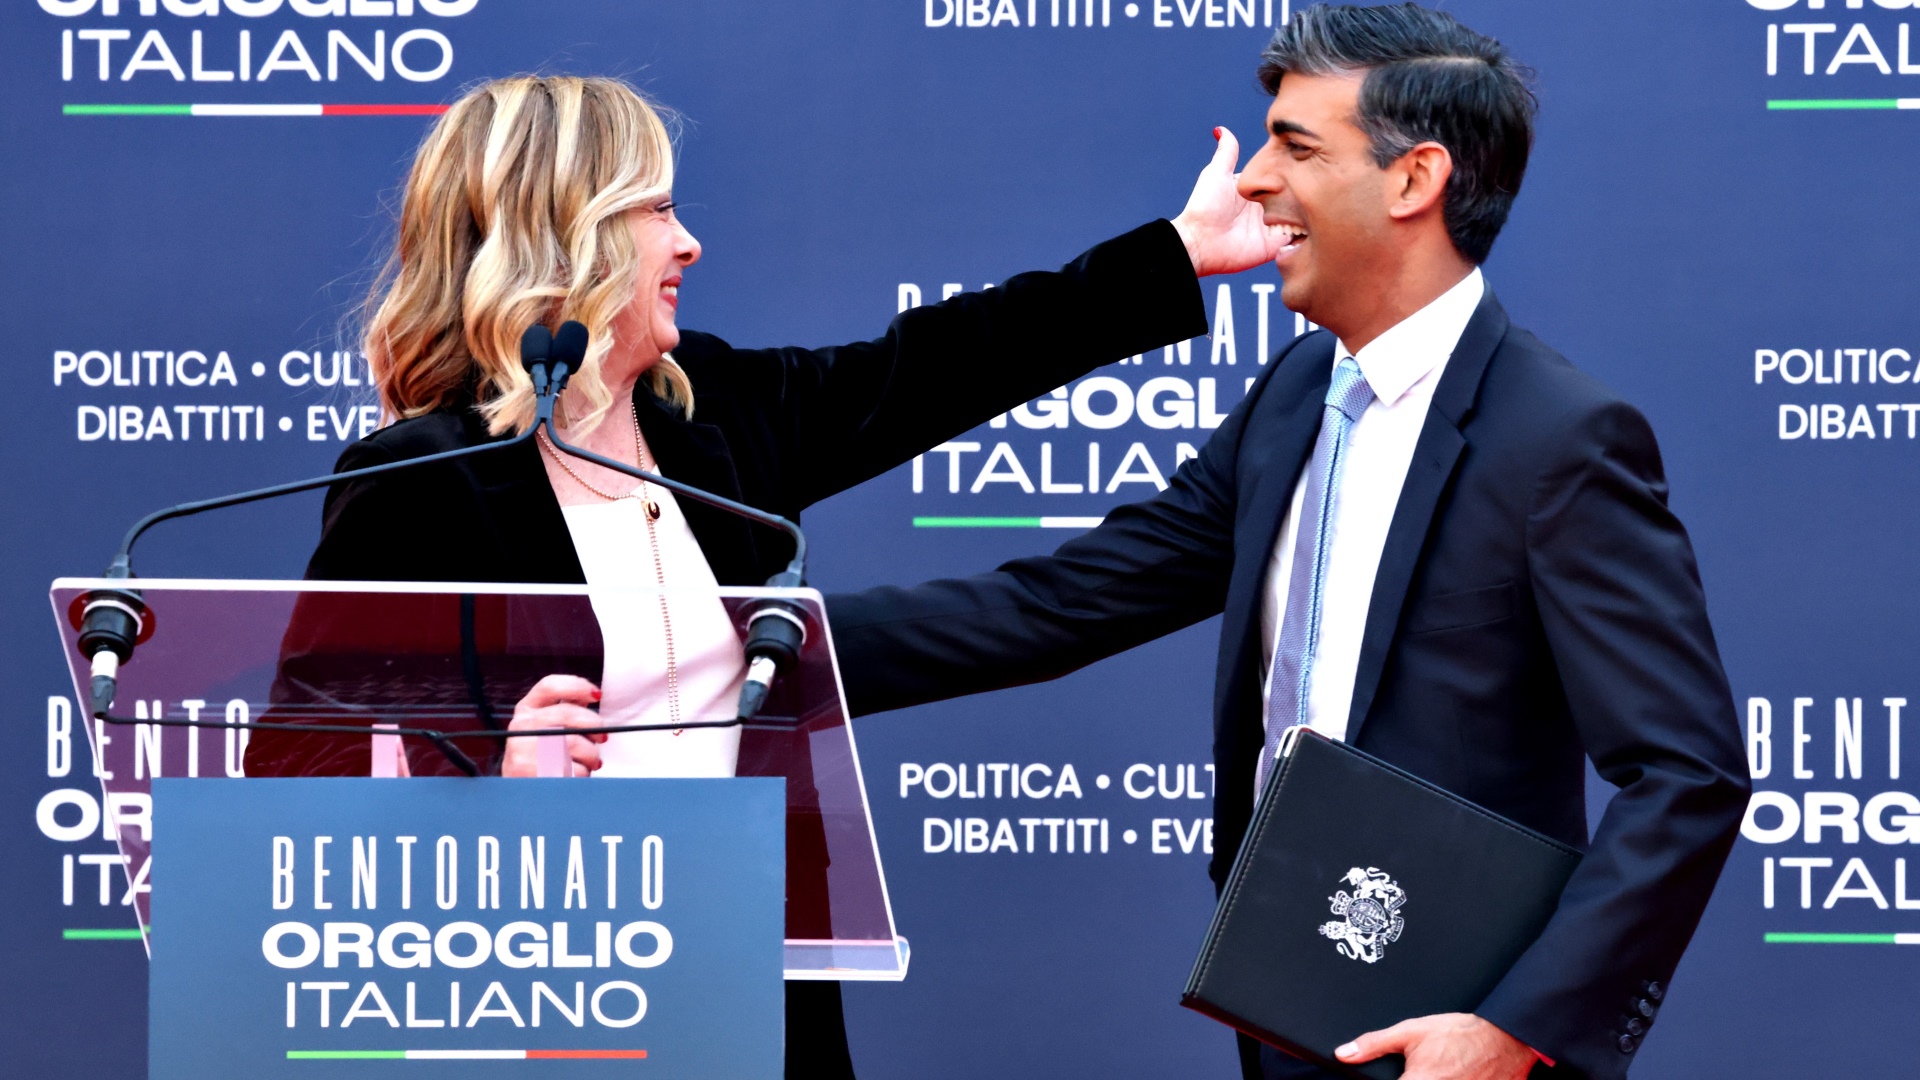 Rishi Sunak with Italy’s far-right PM Giorgia Meloni at the Atreju 2023 Conservative political festival in Rome last month. Photo: Franco Origlia/Getty